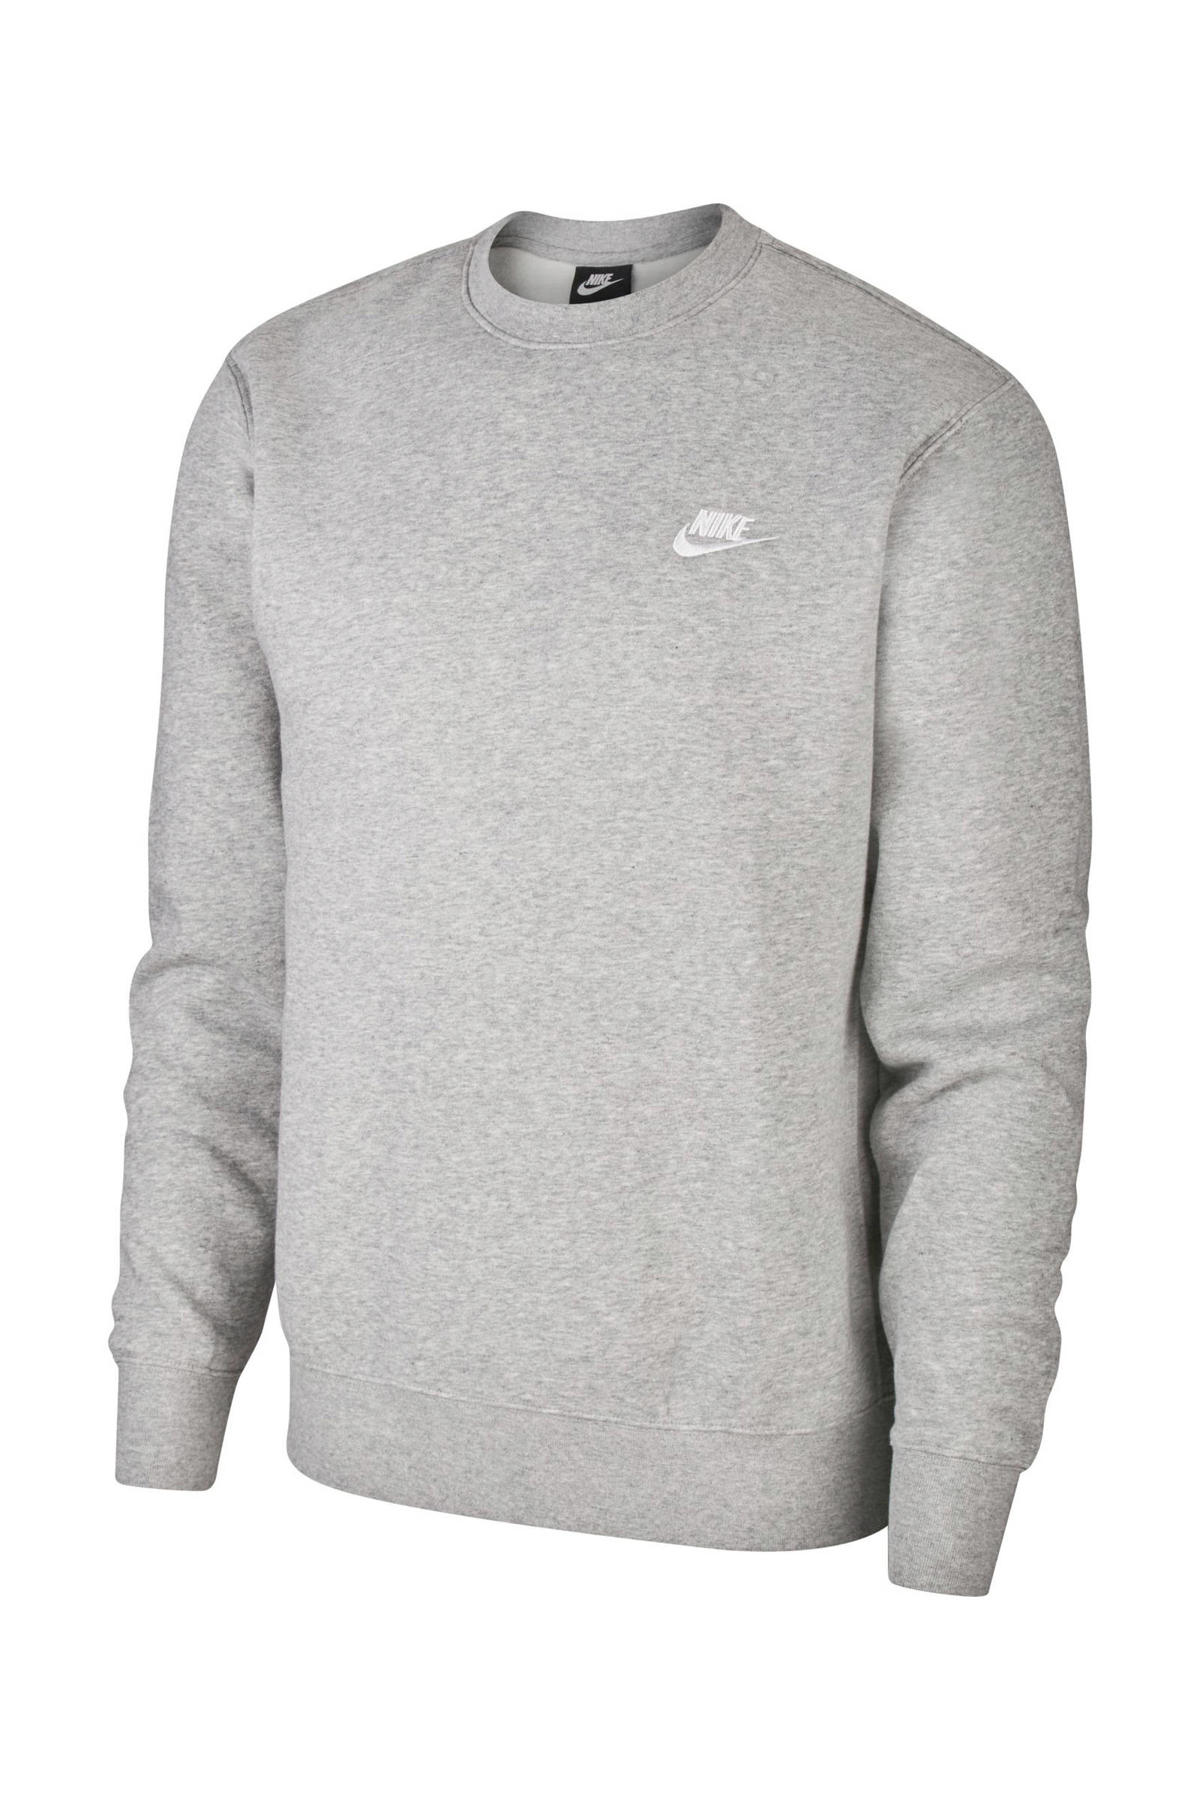 kleermaker trainer pellet Nike sweater grijs melange kopen? | Morgen in huis | wehkamp